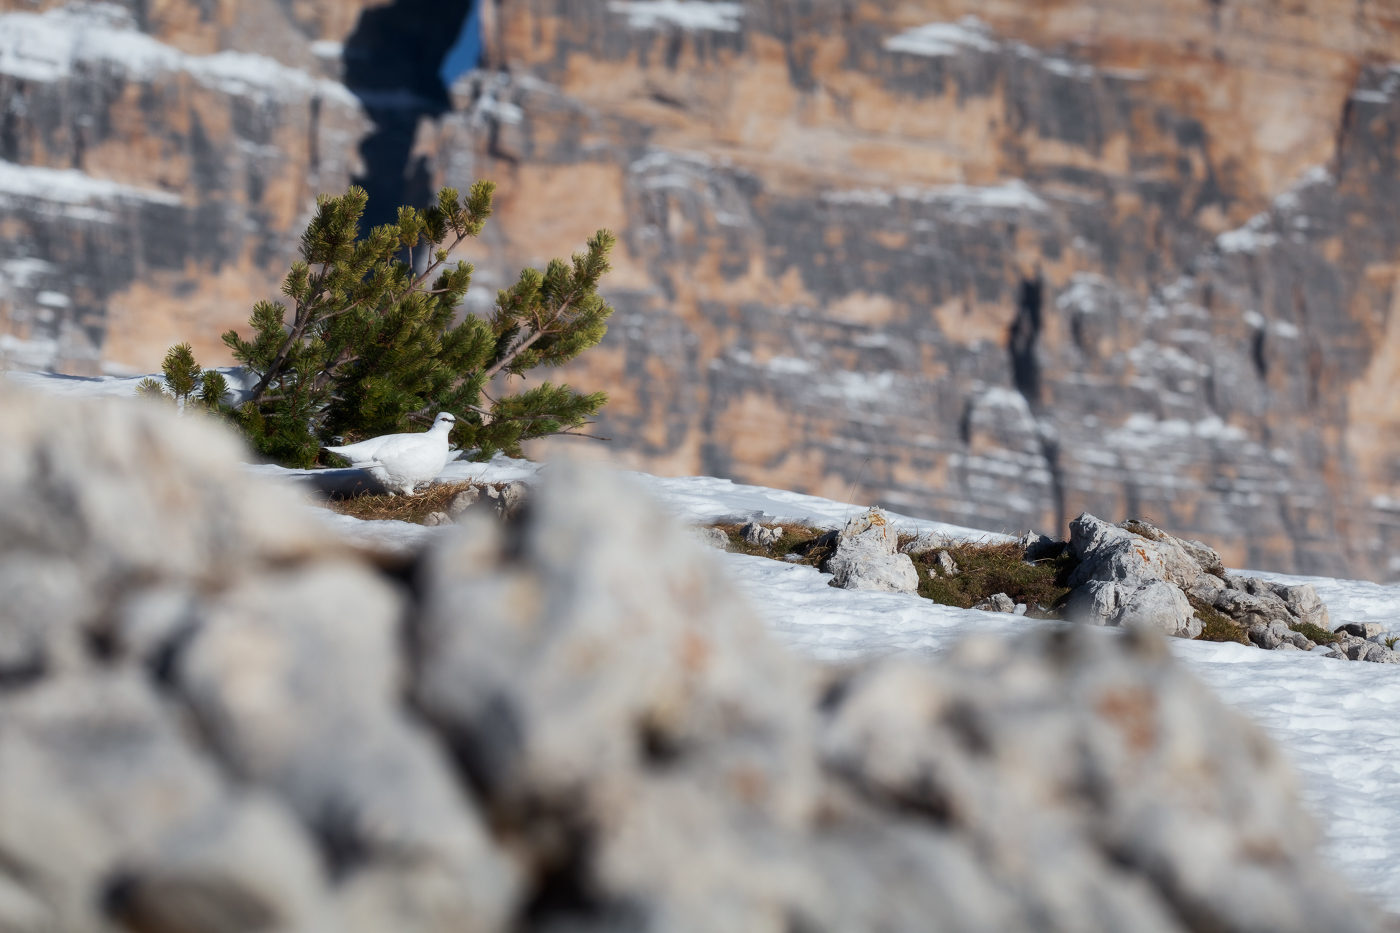 Fra le vivide rocce dei massicci dolomitici prende la scena una candida pernice bianca (Lagopus muta). Parco Naturale Tre Cime, Dolomiti di Sesto, Italia.